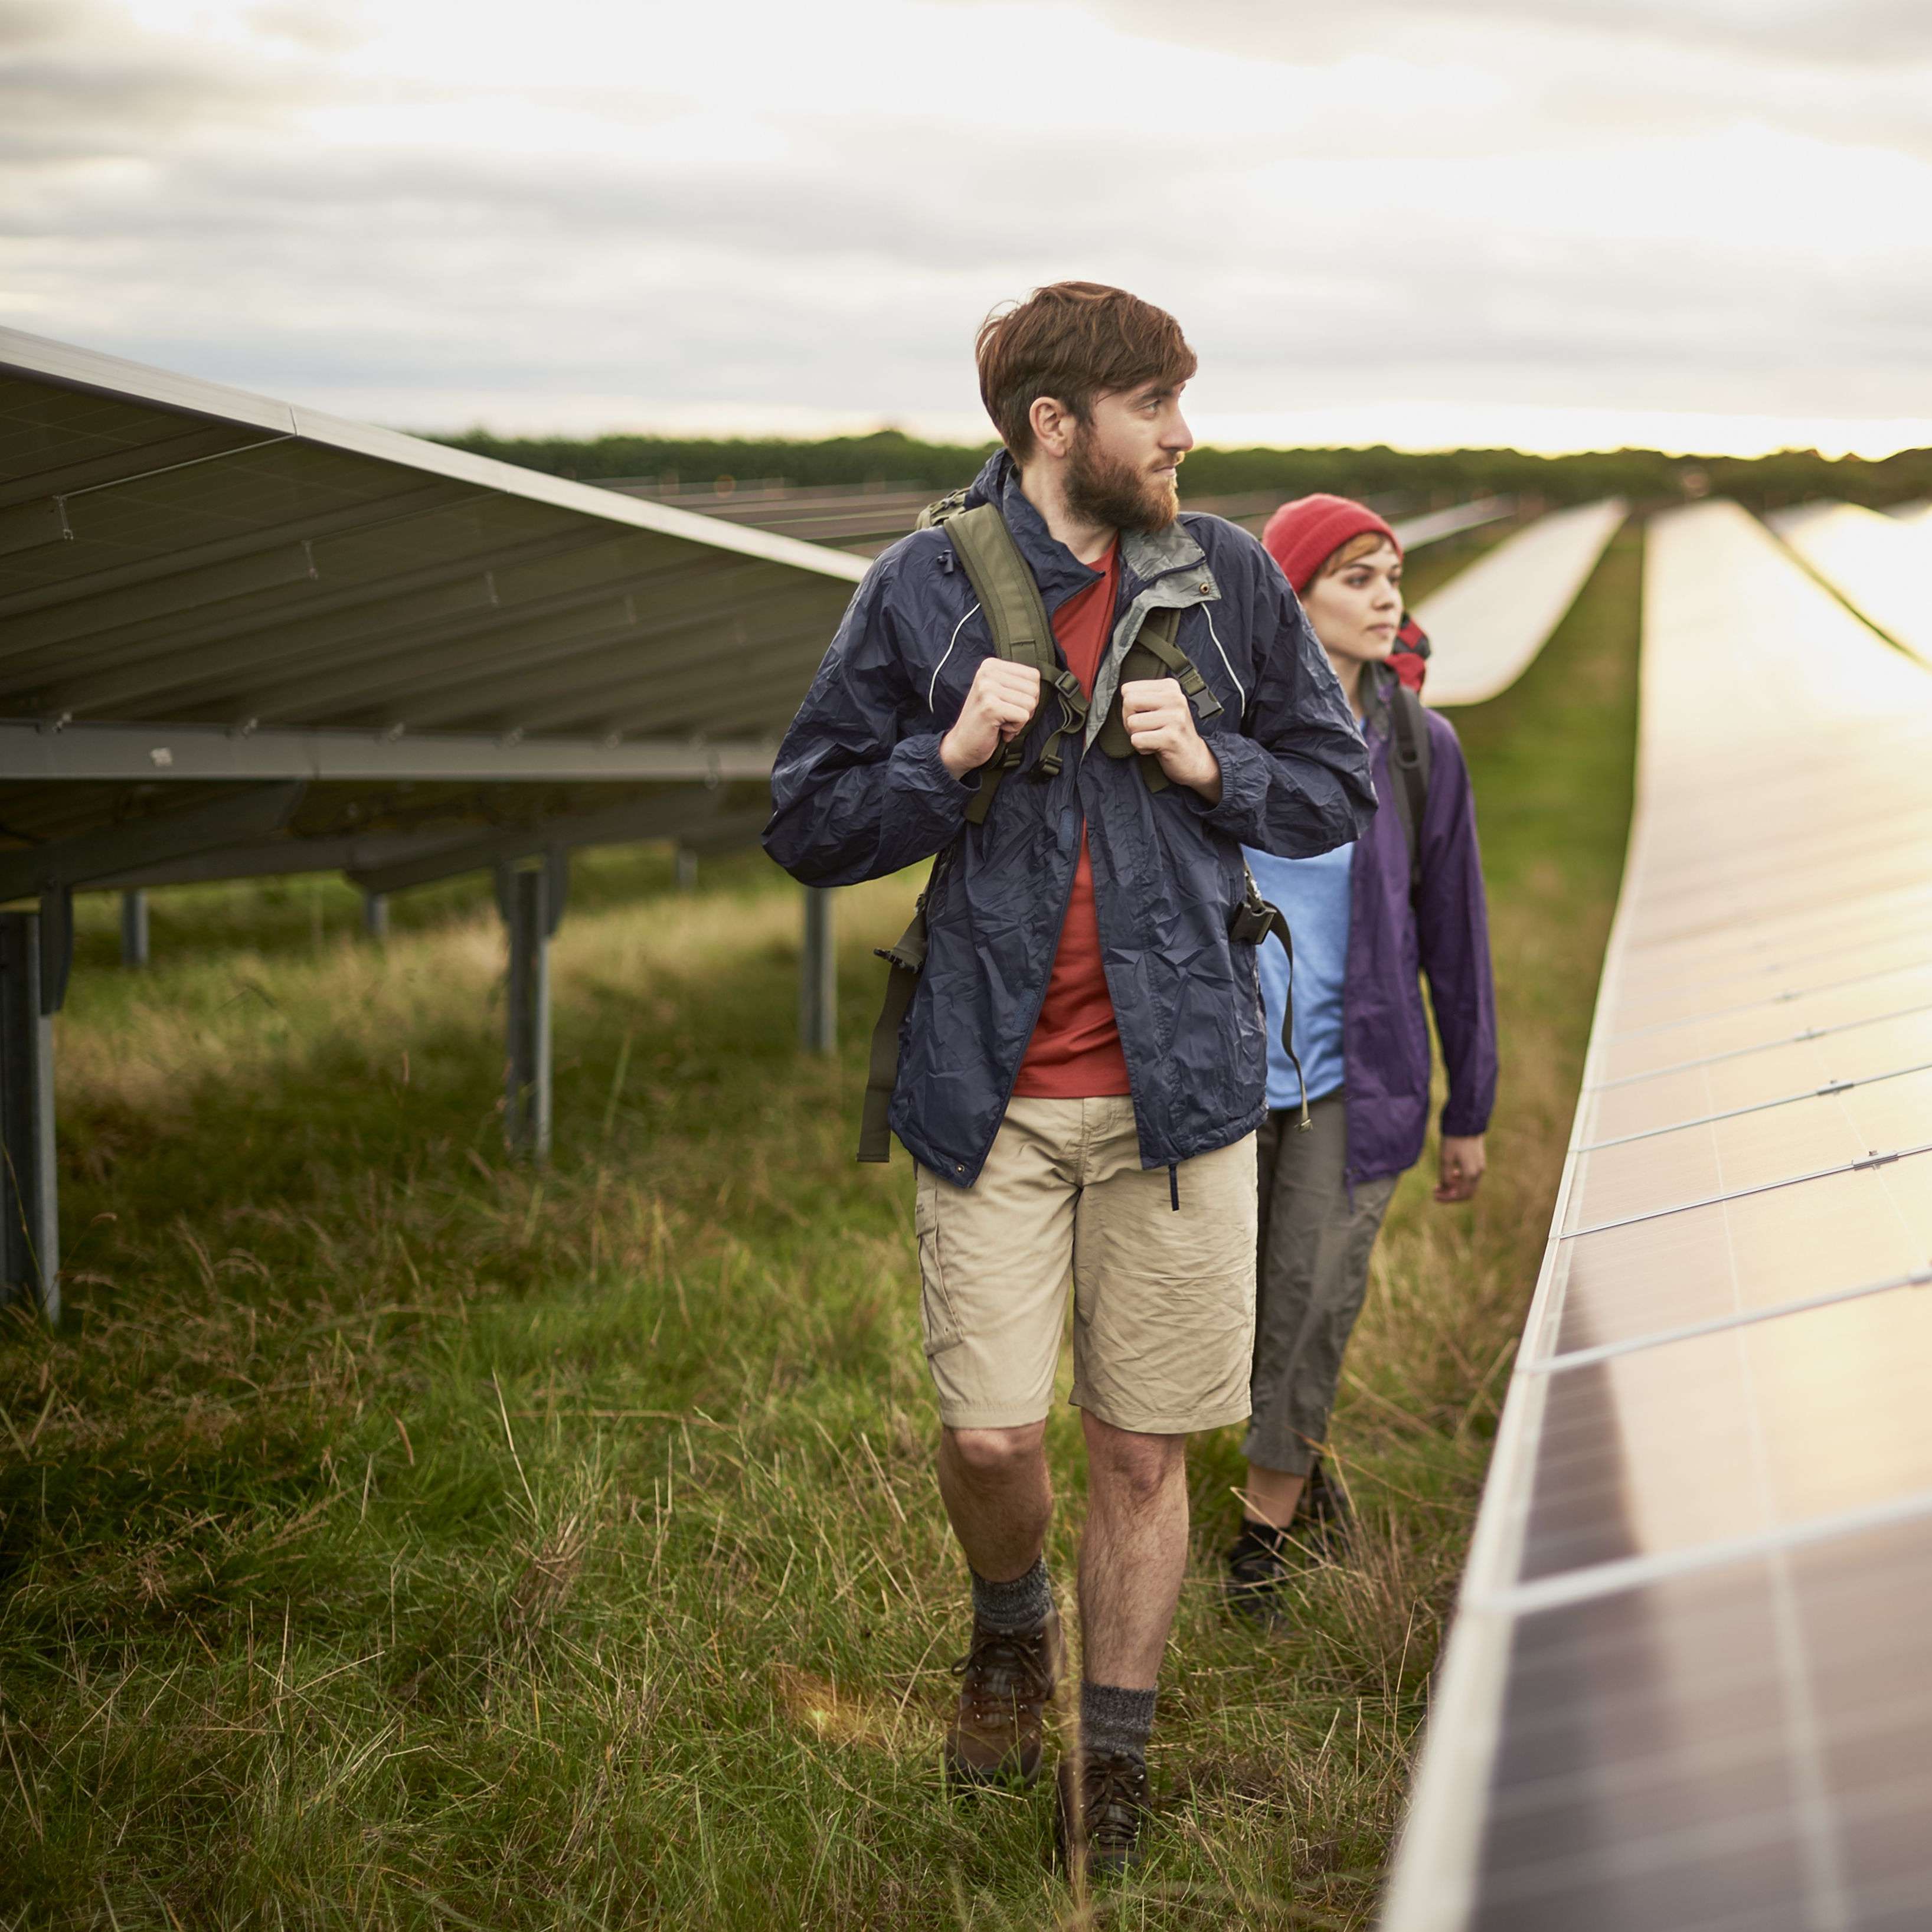 Zwei junge Menschen spazieren auf einer Wiese zwischen Solarpanels